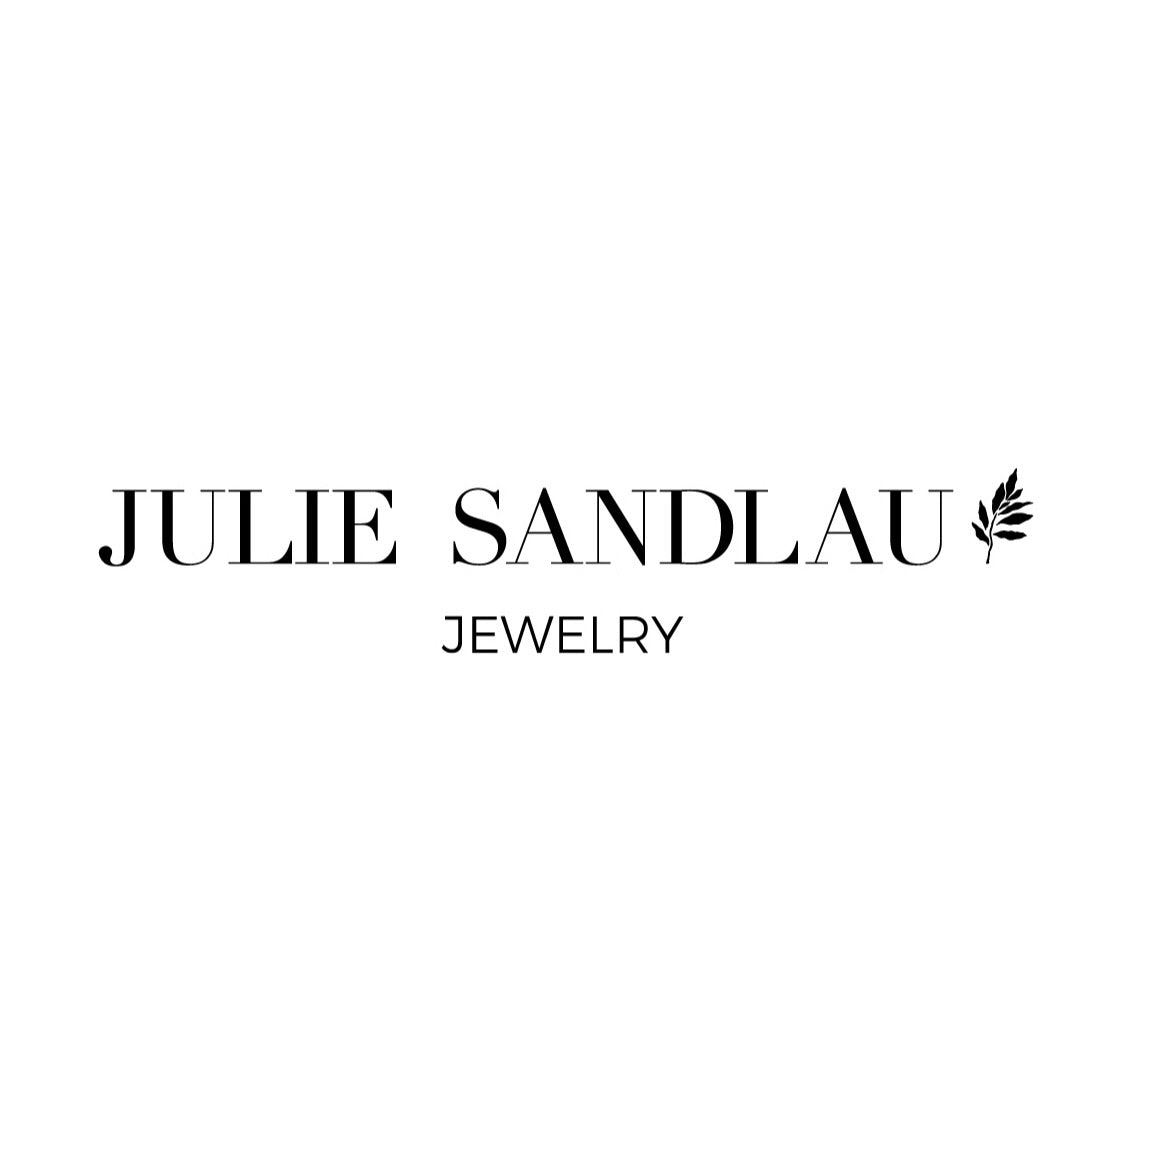 Julie Sandlau